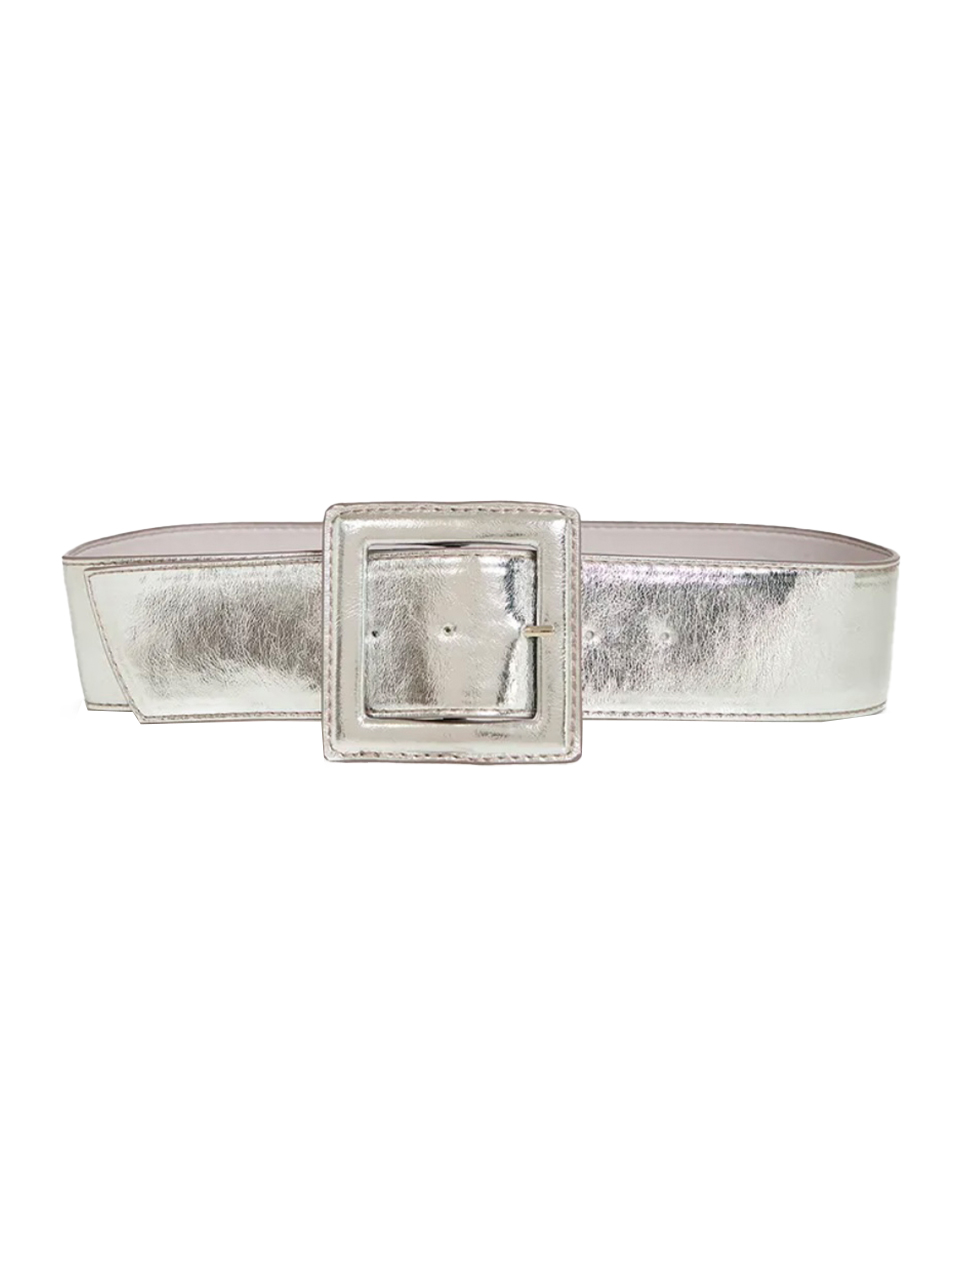 ESSENTIEL ANTWERP Metallic Waist Belt in Silver Front View 